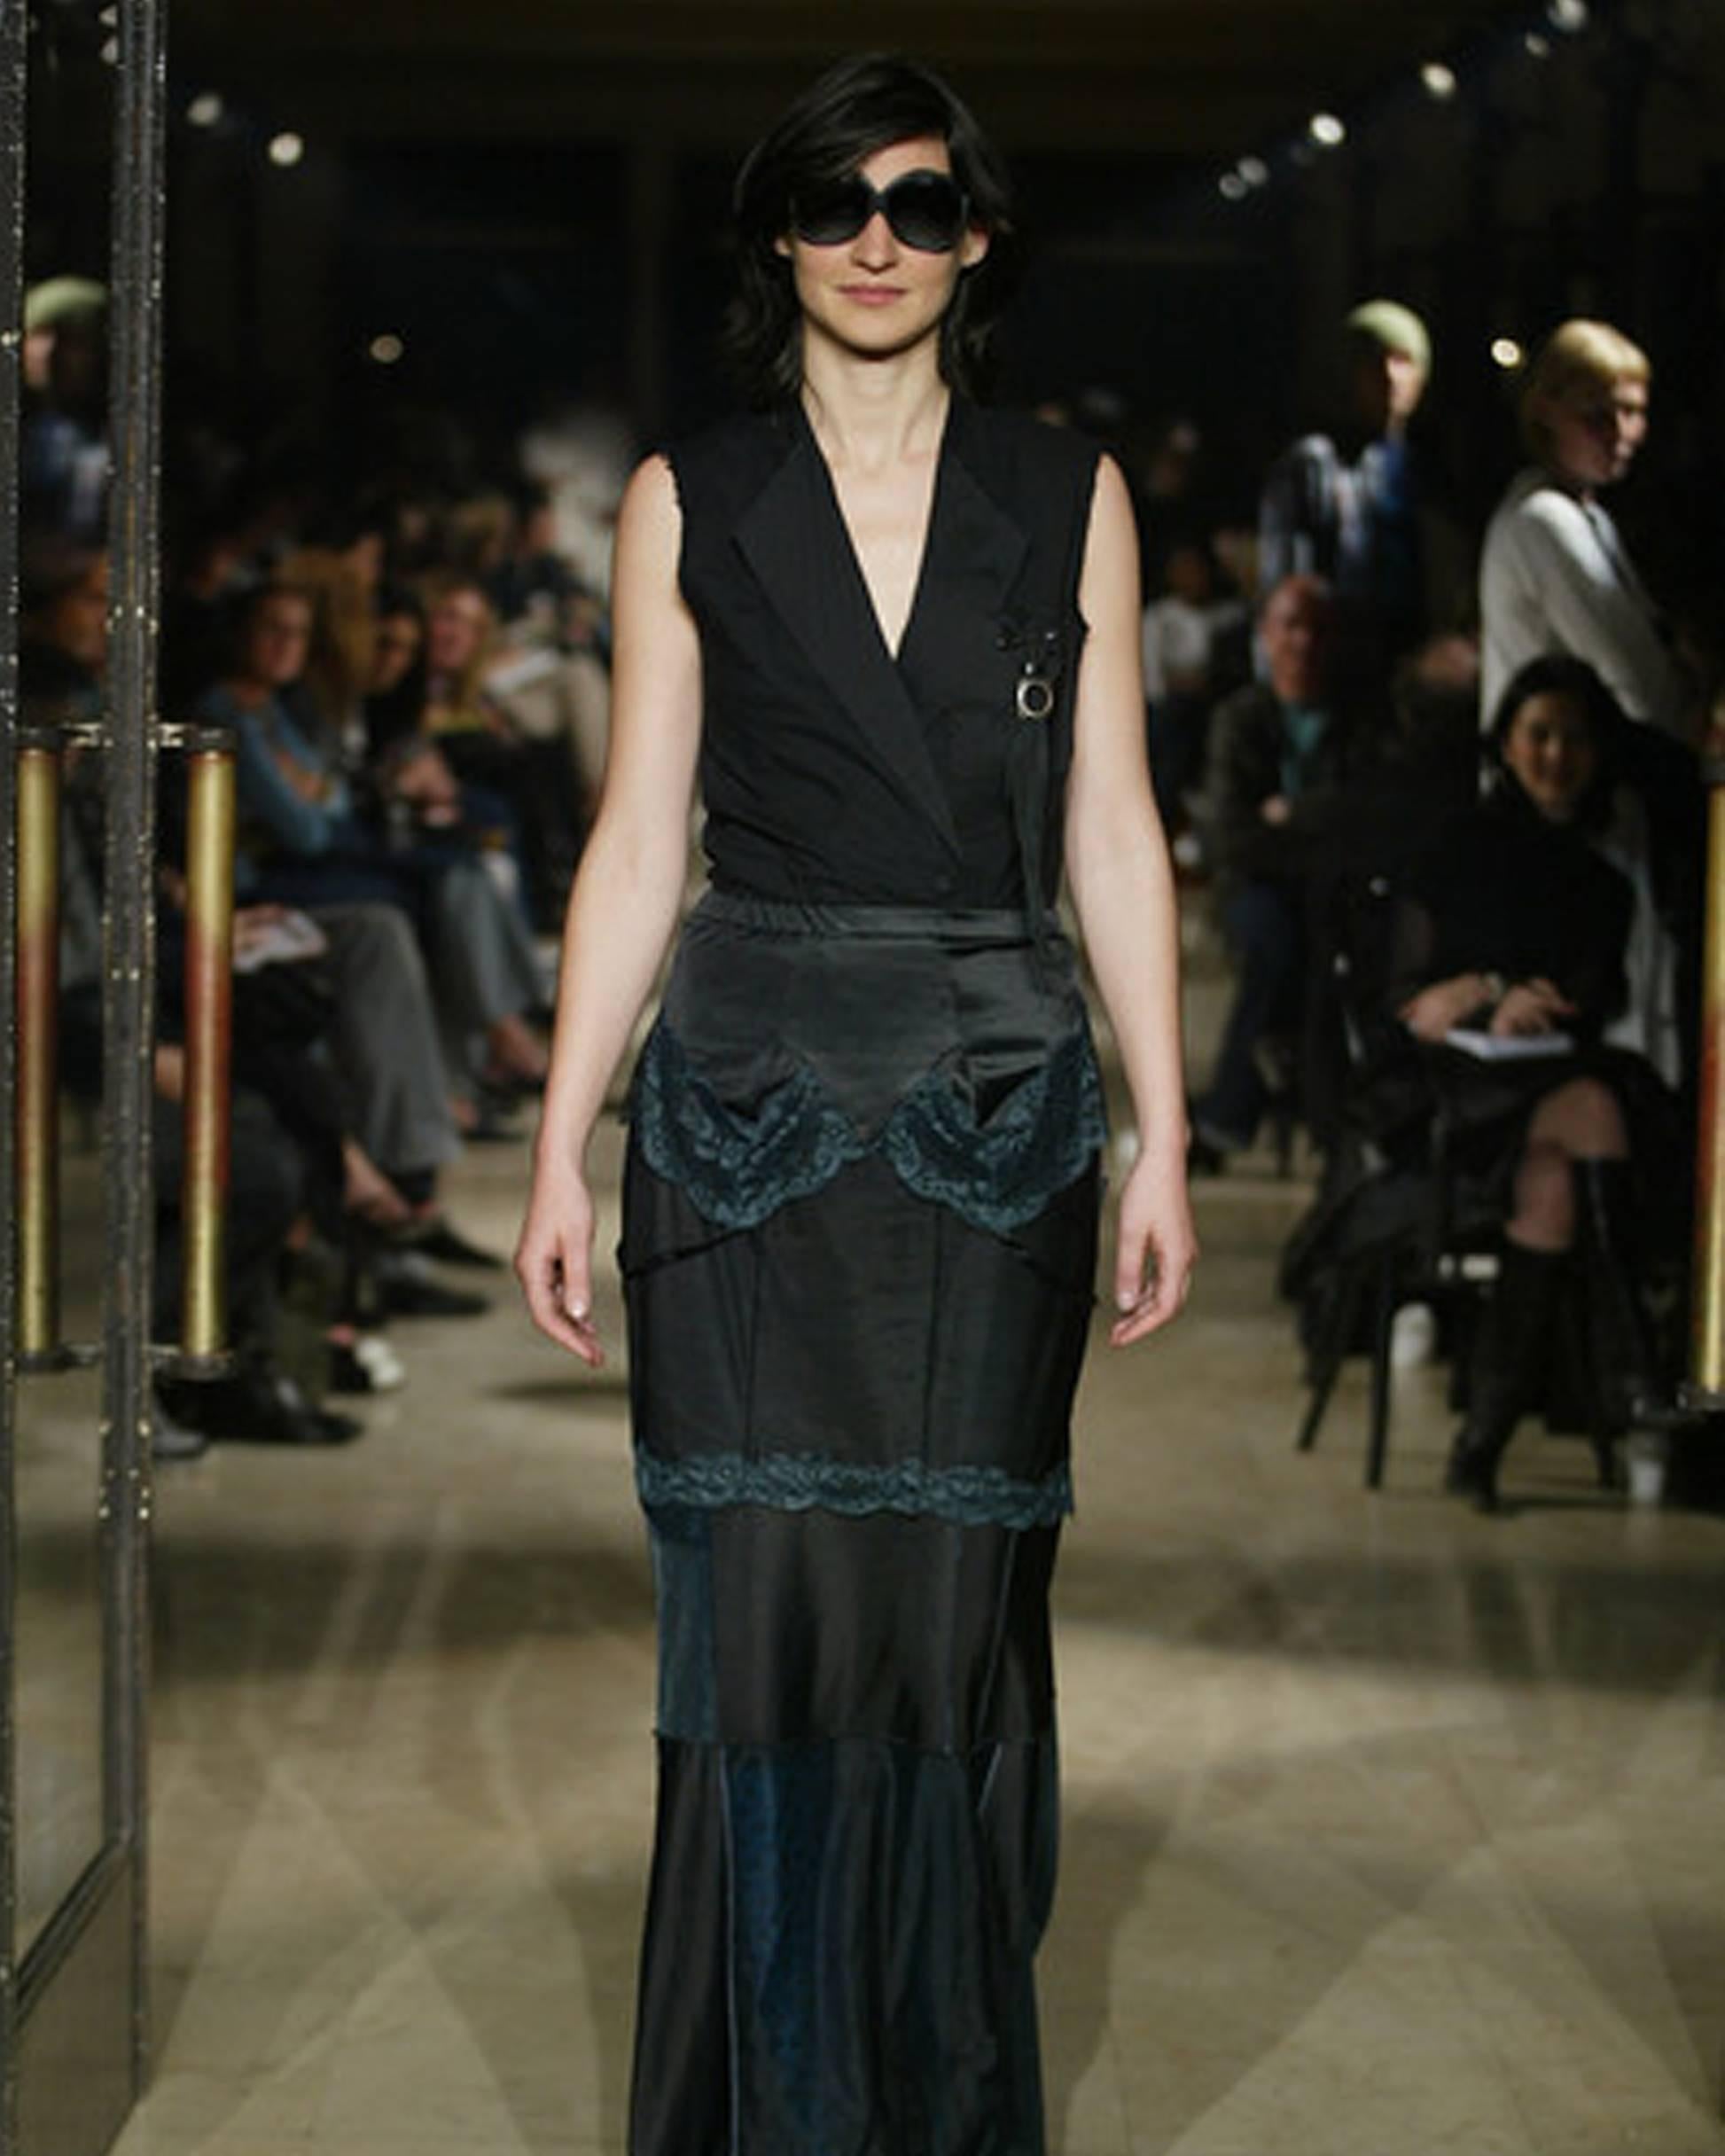 Ein einzigartiges Maison Martin Margiela Frühjahr-Sommer 2003 Lingerie-Kleid aus schwarzem Polyester, das in einen vielseitigen Rock umgewandelt wurde. Dieses rekonstruierte Stück spiegelt die künstlerische Herangehensweise der Marke an Mode und die